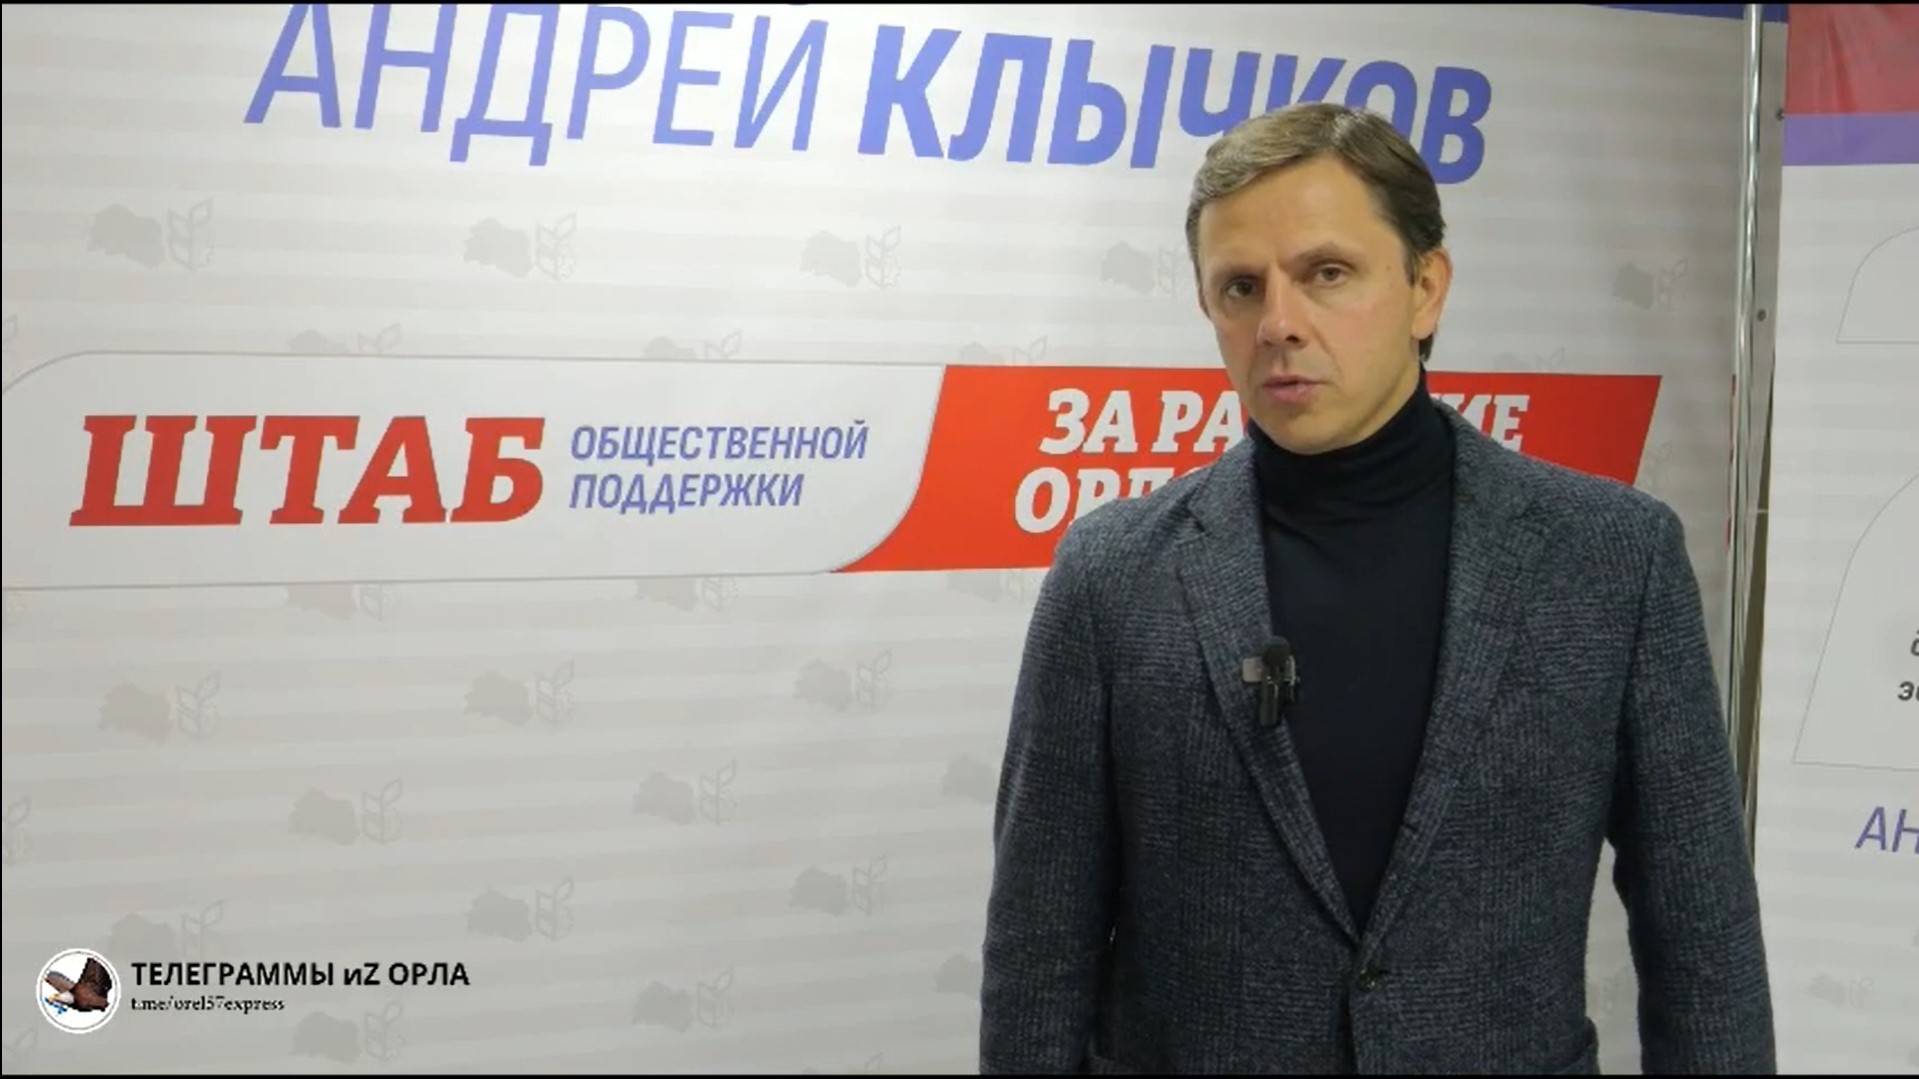 Андрей Клычков набрал 276 842 голоса избирателей, что составляет 82,09%, и поблагодарил орловчан за поддержку